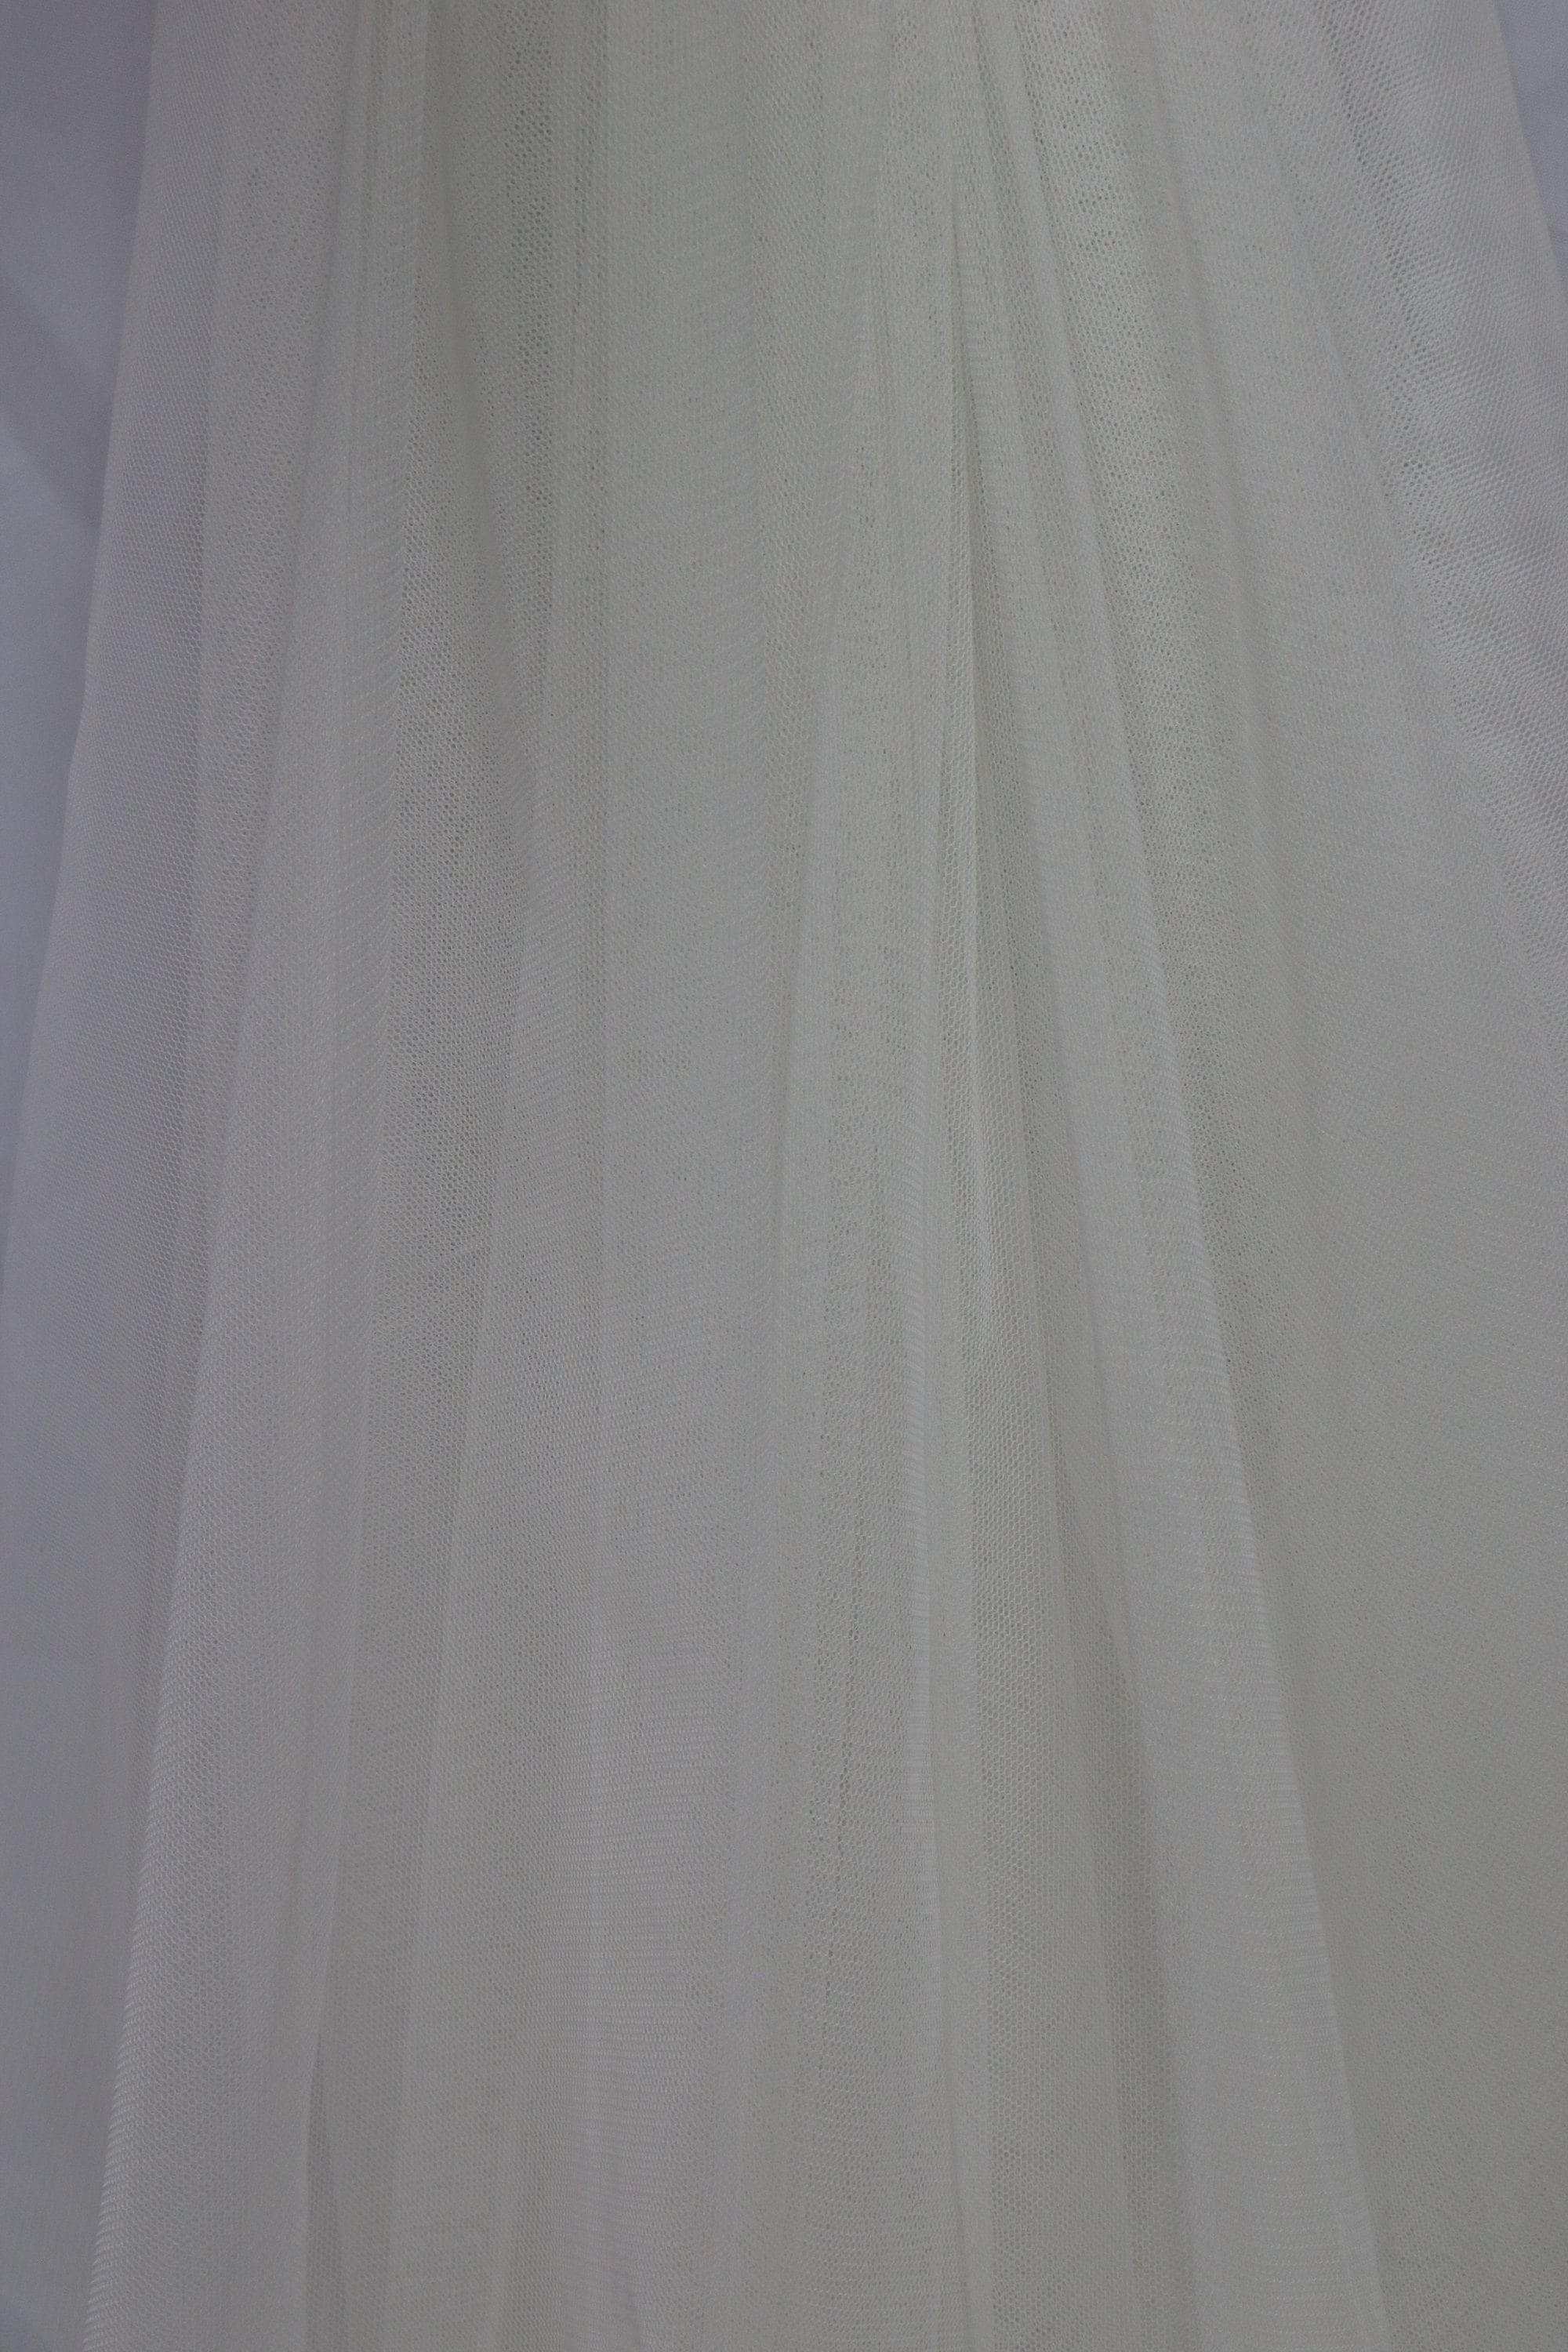 Ivory off White Extra Soft Italian Tulle Mesh Fabric 2 Way | Etsy UK